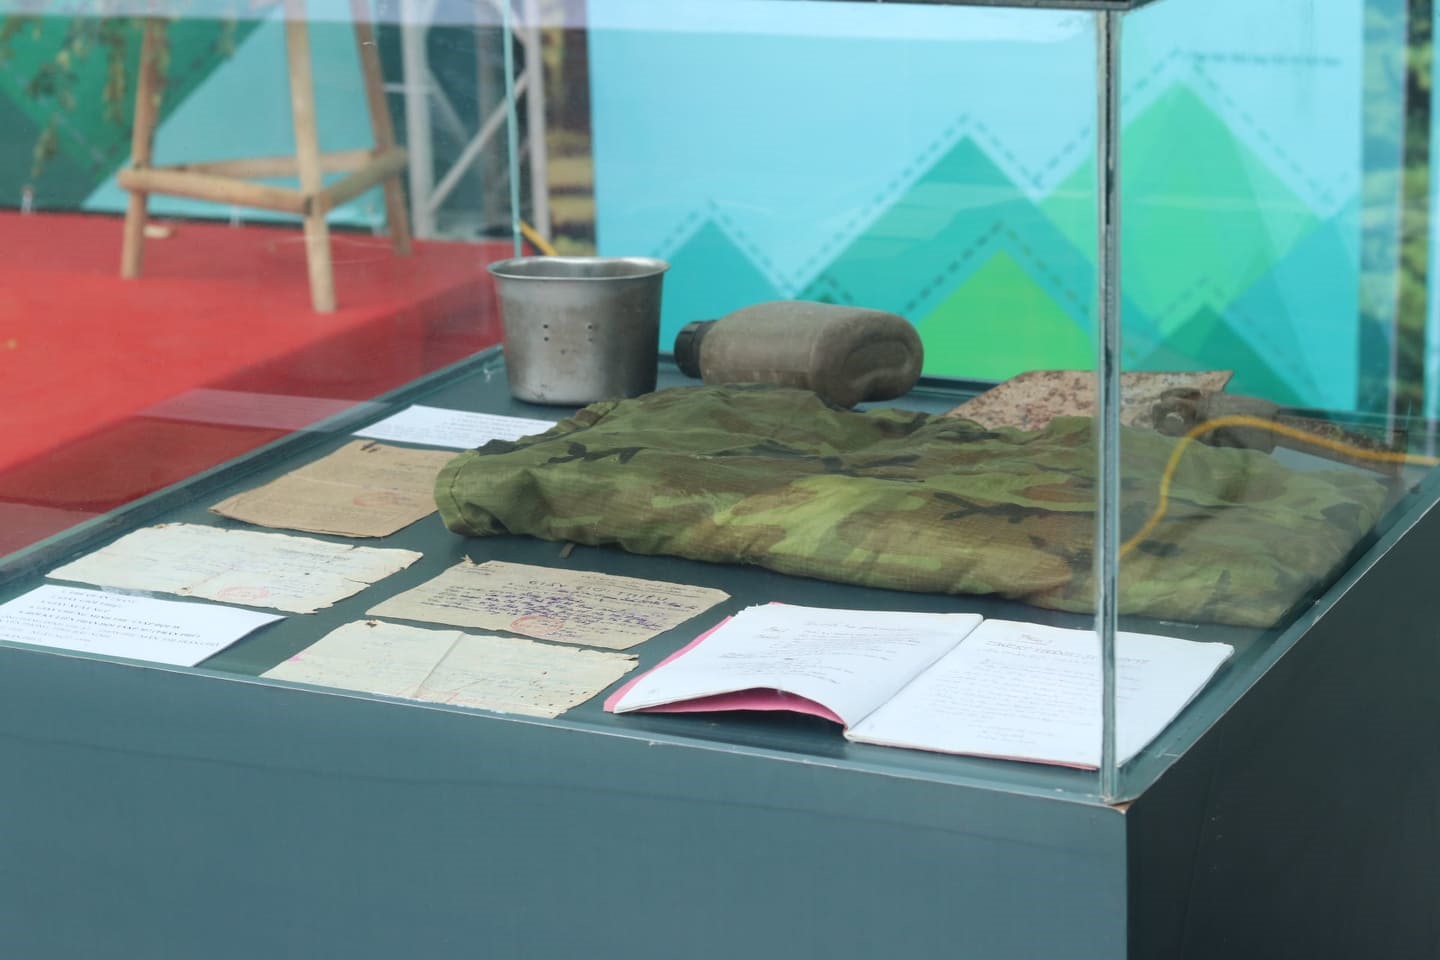 Một số hình ảnh, hiện vật ý nghĩa được trưng bày, giới thiệu tại triển lãm “70 năm - Sáng mãi tinh thần Thanh niên xung phong Việt Nam”. Ảnh: Lan Nhi